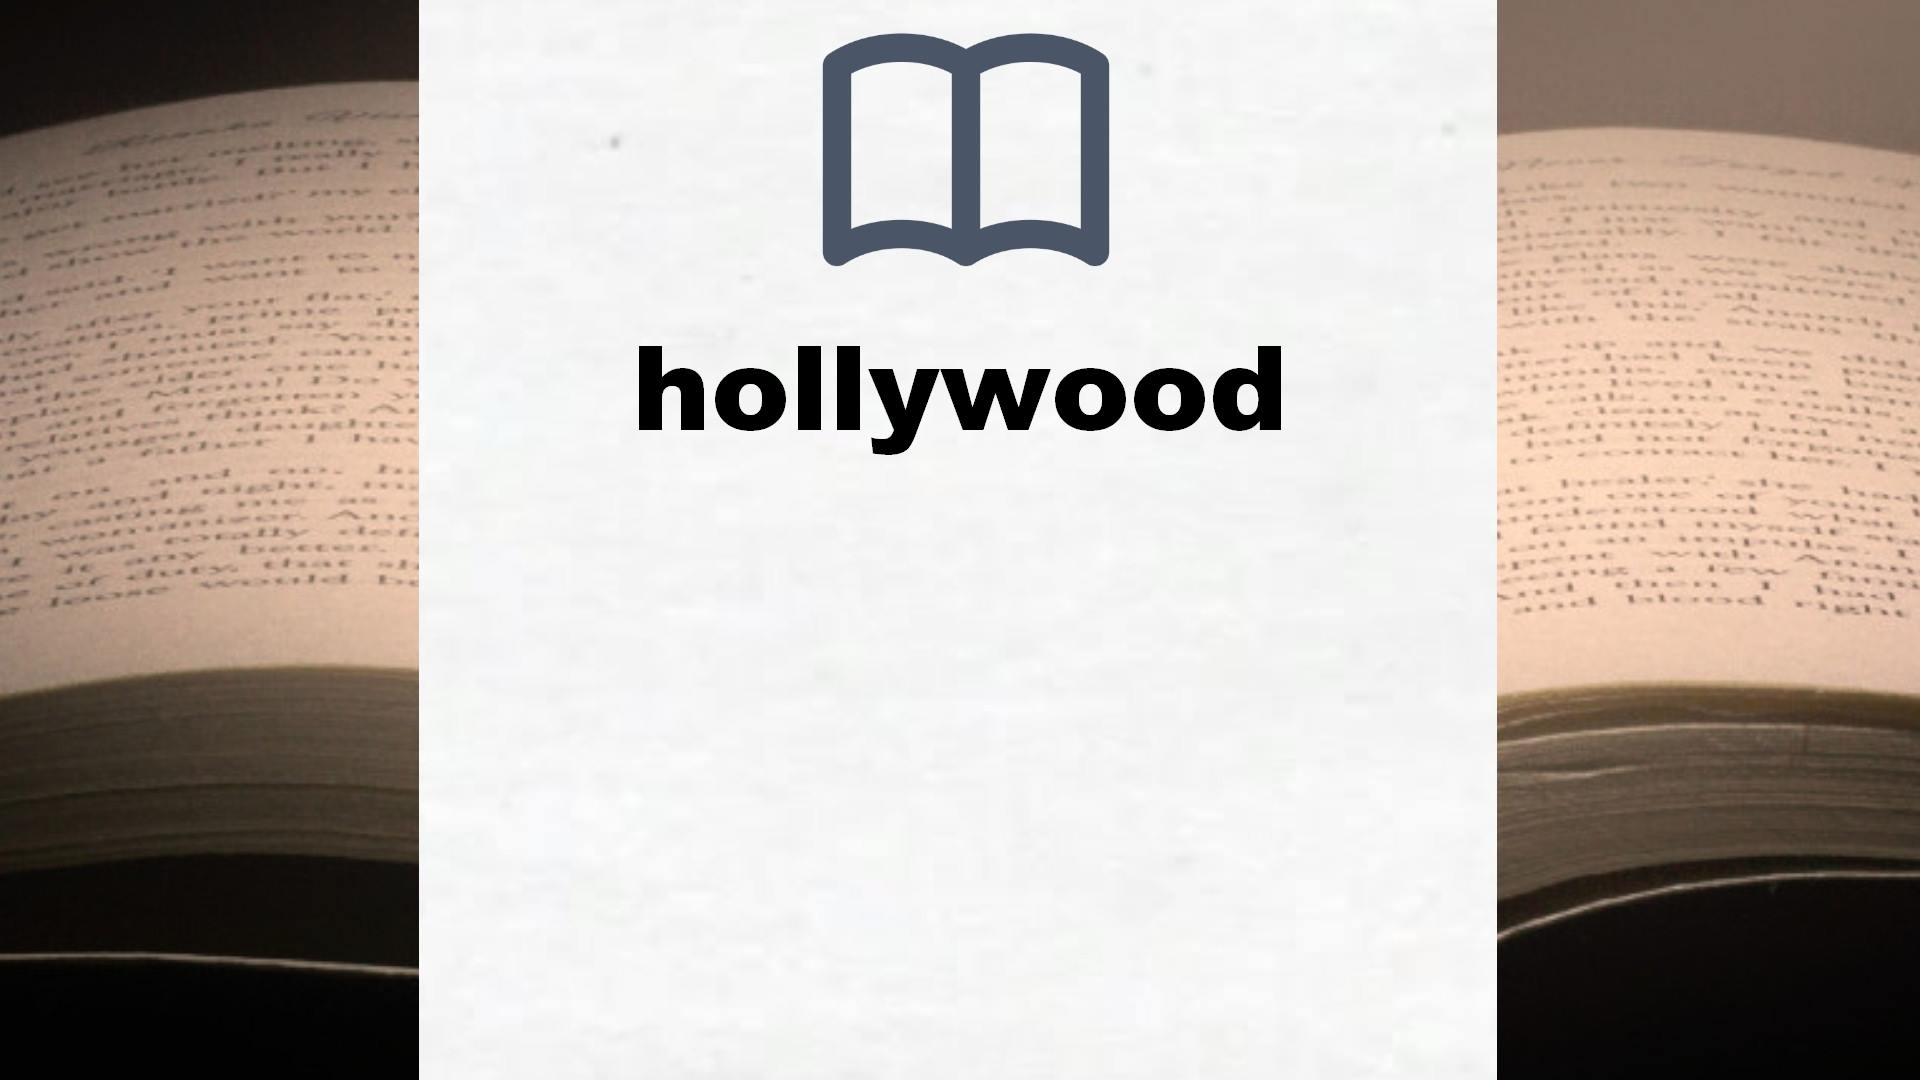 Libros sobre hollywood